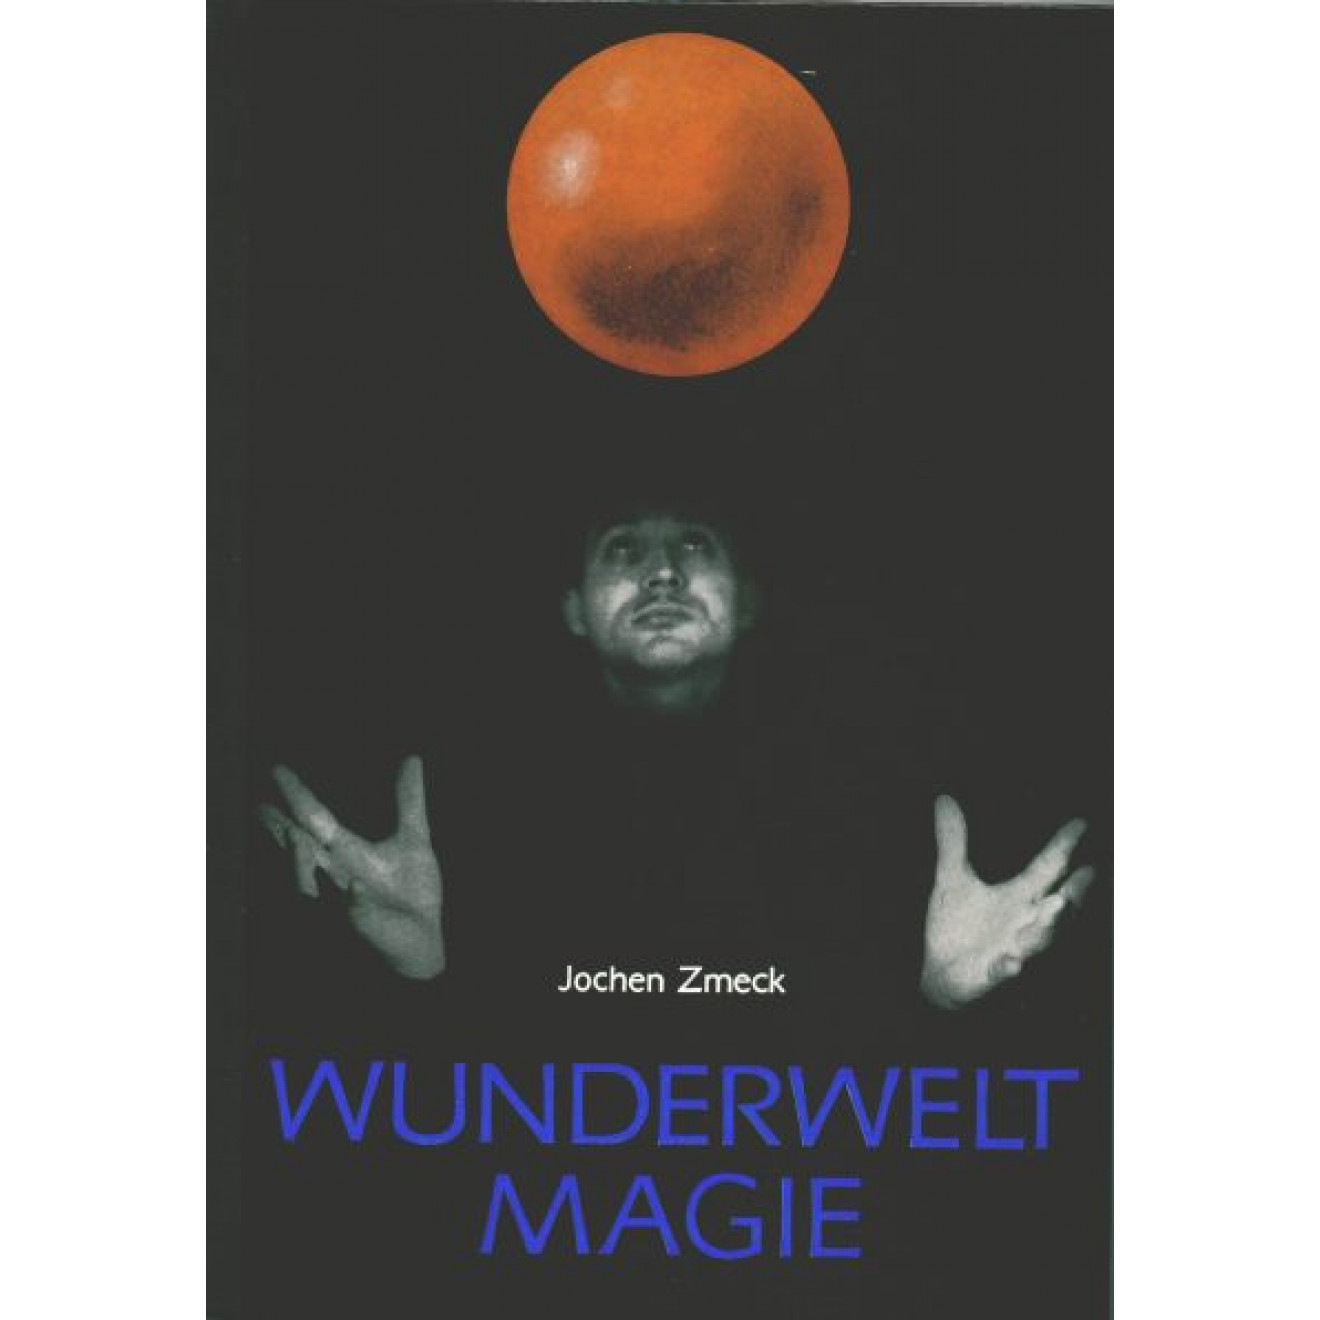 Wunderwelt Magie (Henschelverlag)